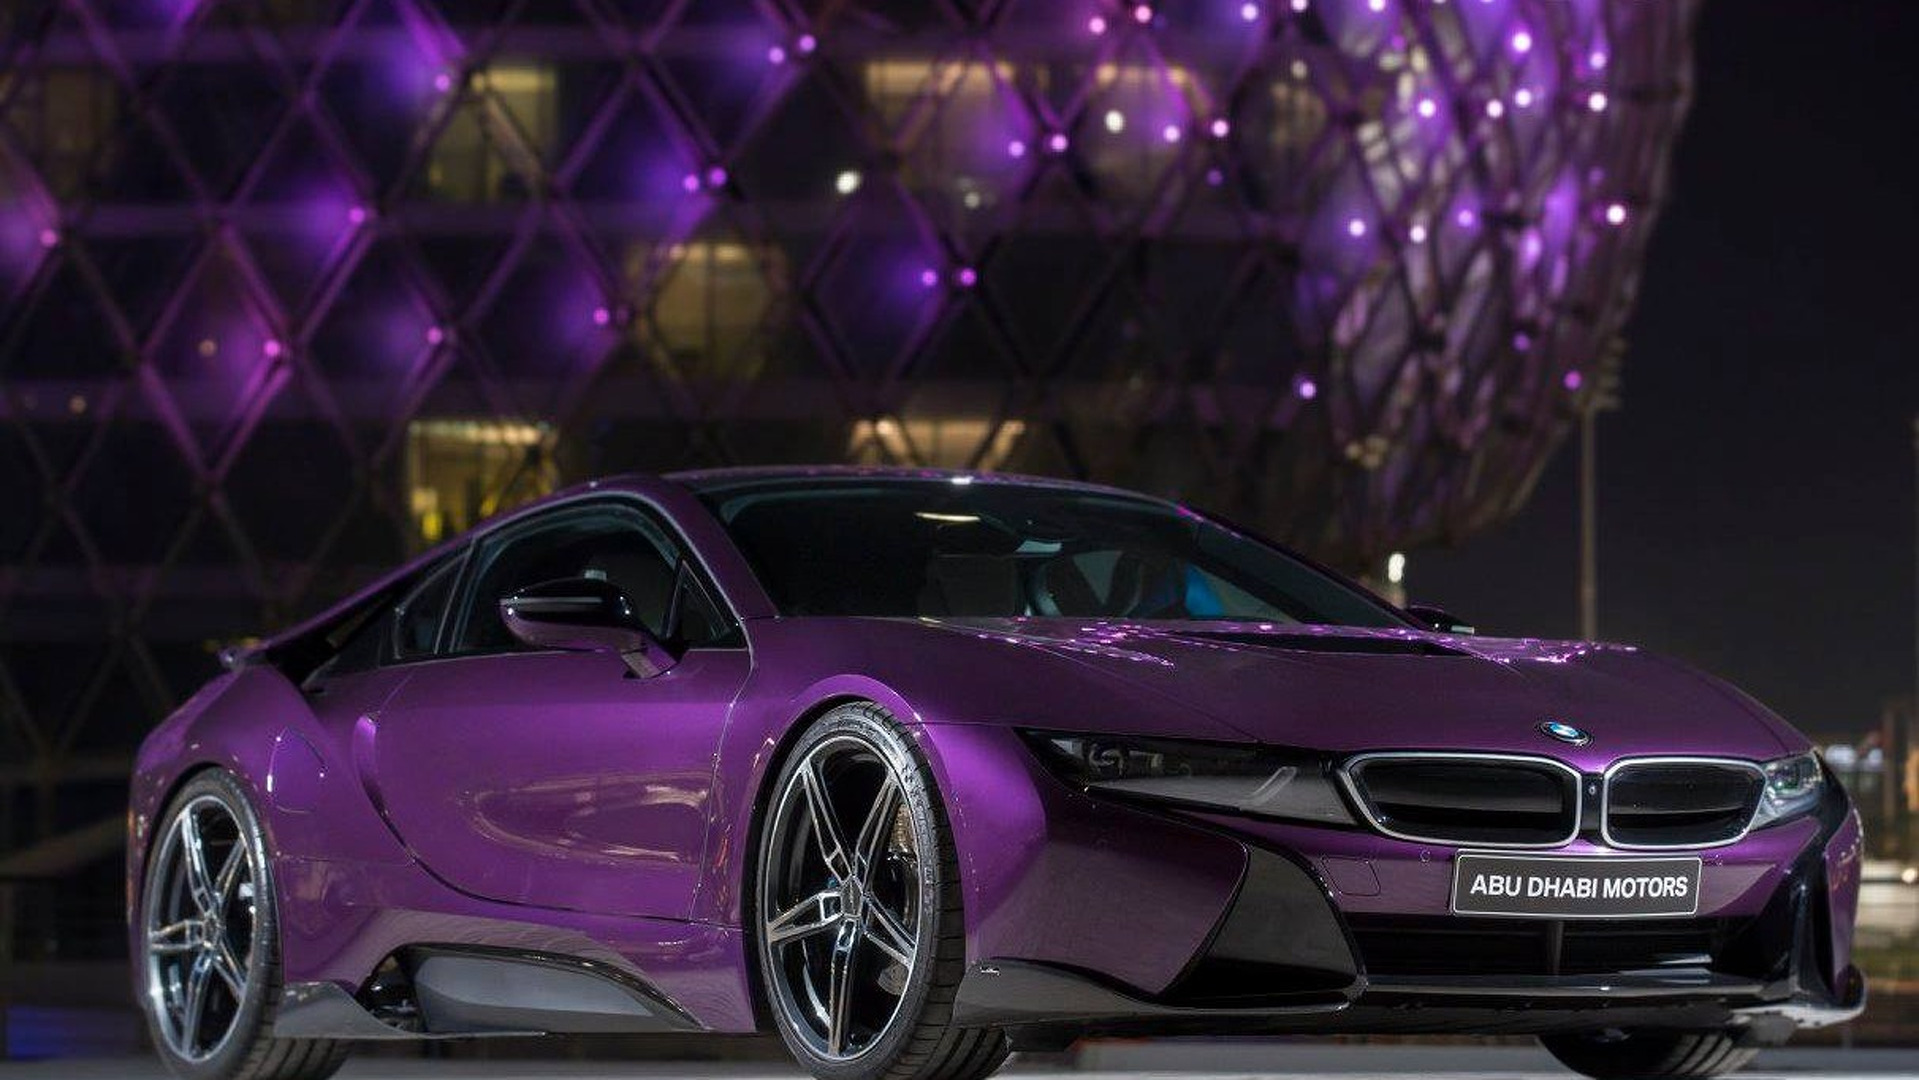 Пурпурный цвет это какой показать фото машины